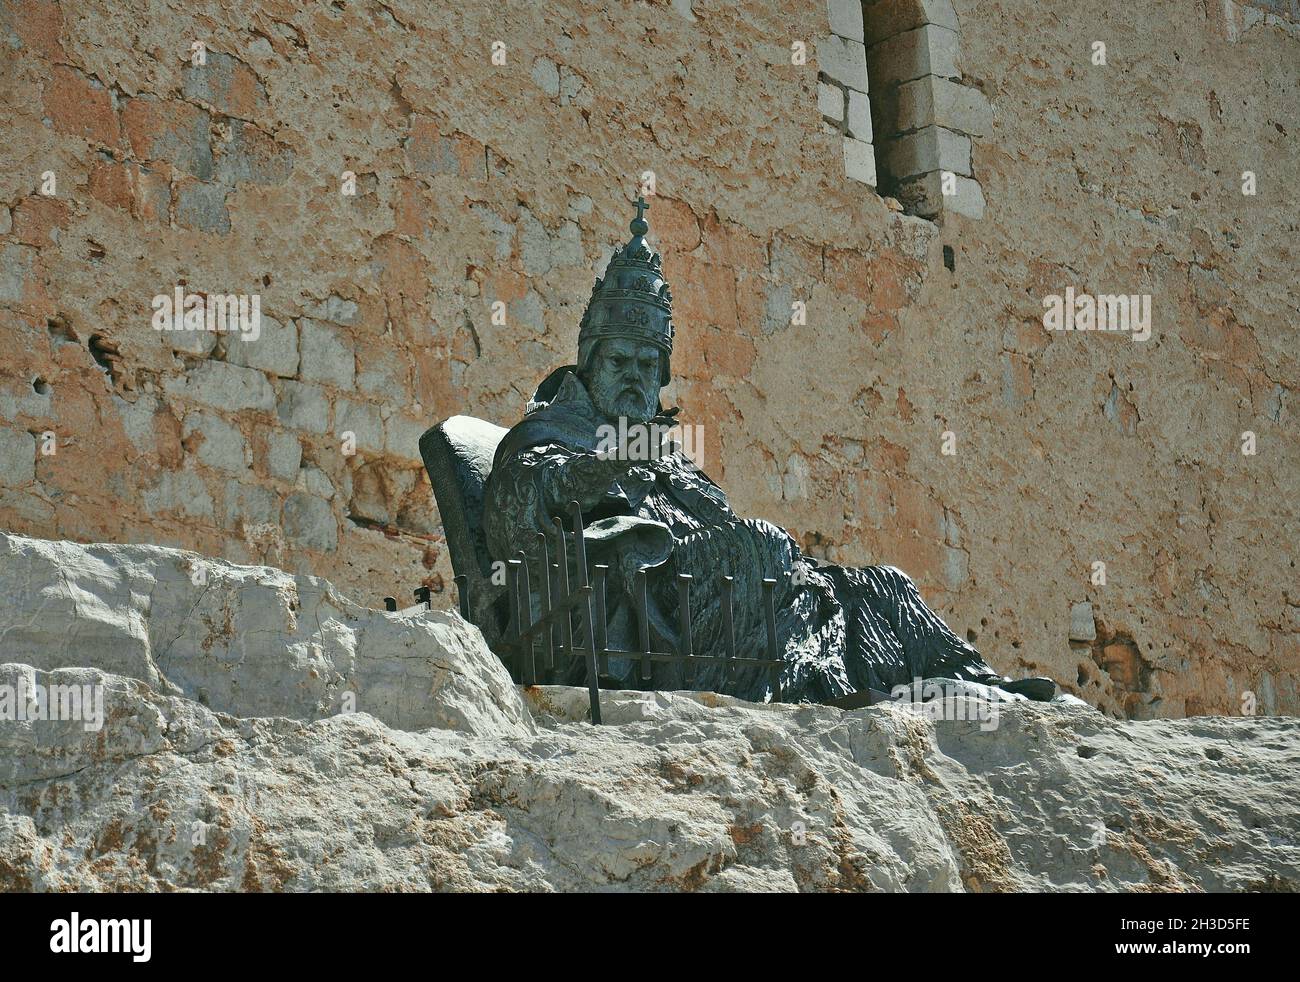 Papa Luna, Benedicto XIII , monumento de Sergio Blanco, Peñíscola, provincia de Castellón, Comunidad Valenciana, España. Foto de stock